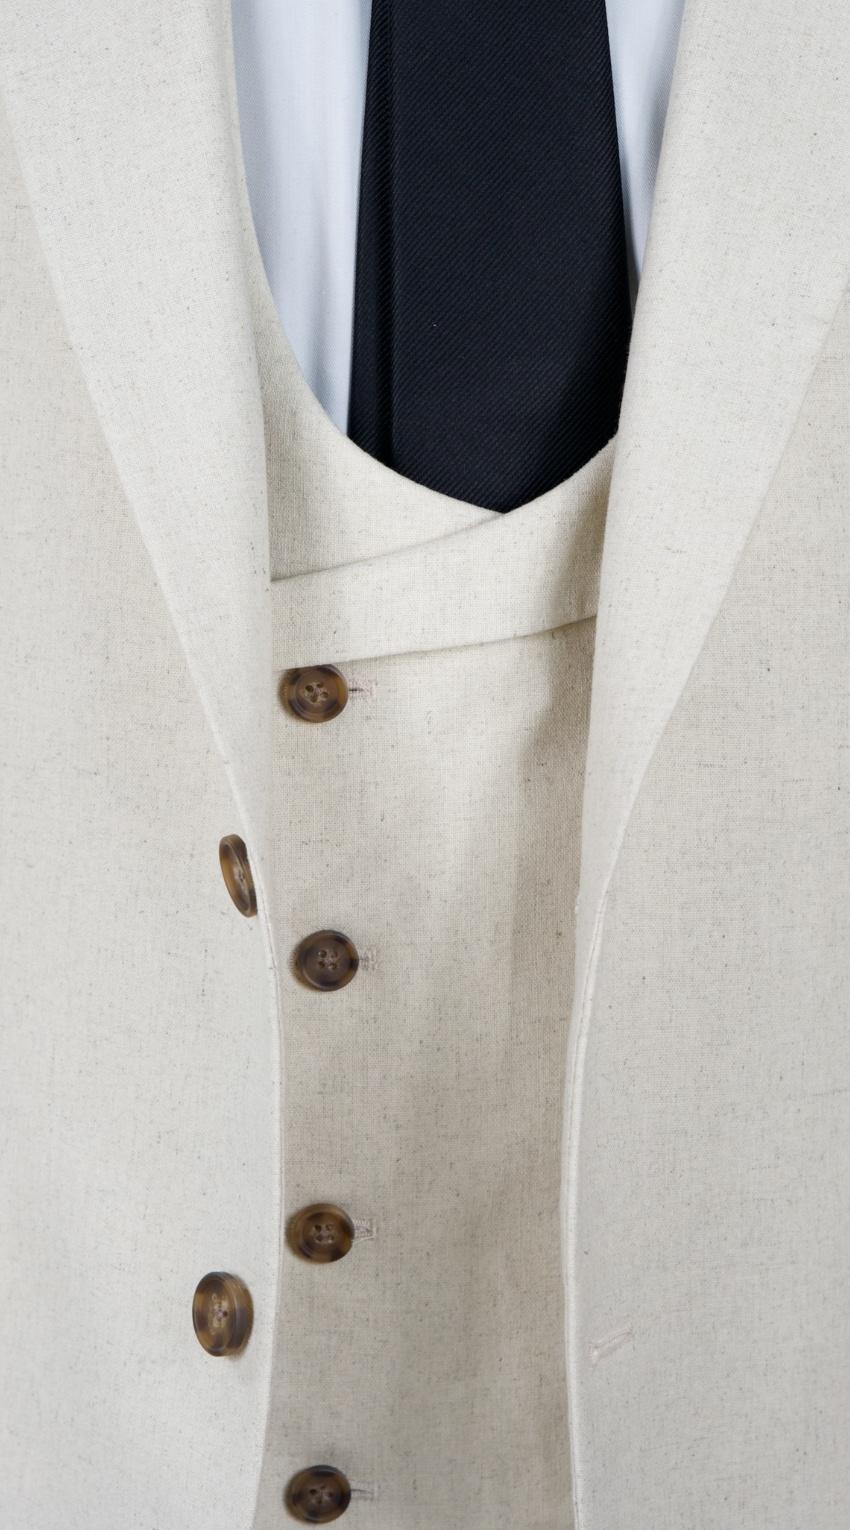 Cream Linen Cotton Mix Suit